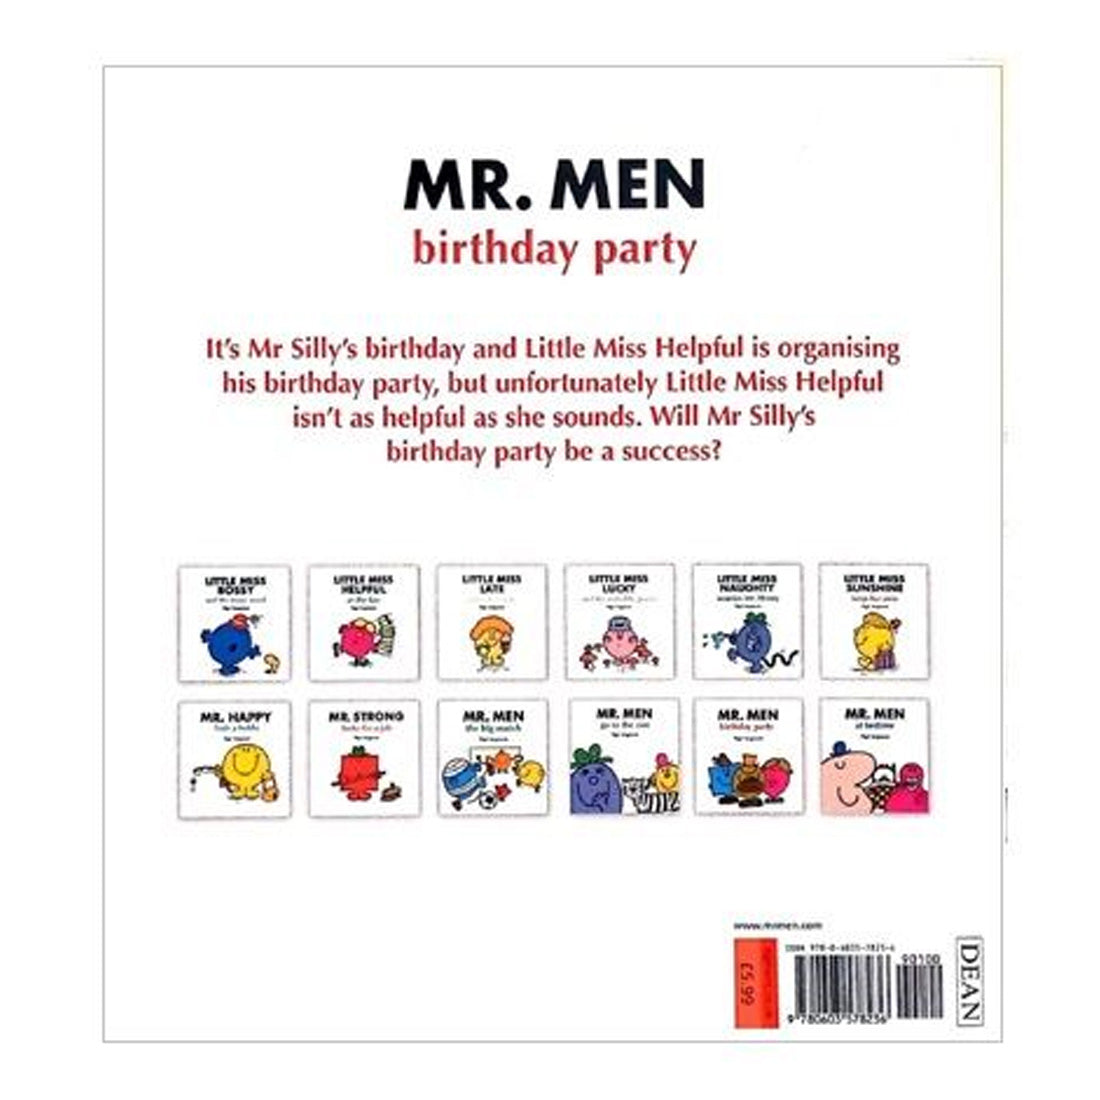 Mr. Men: Birthday Party